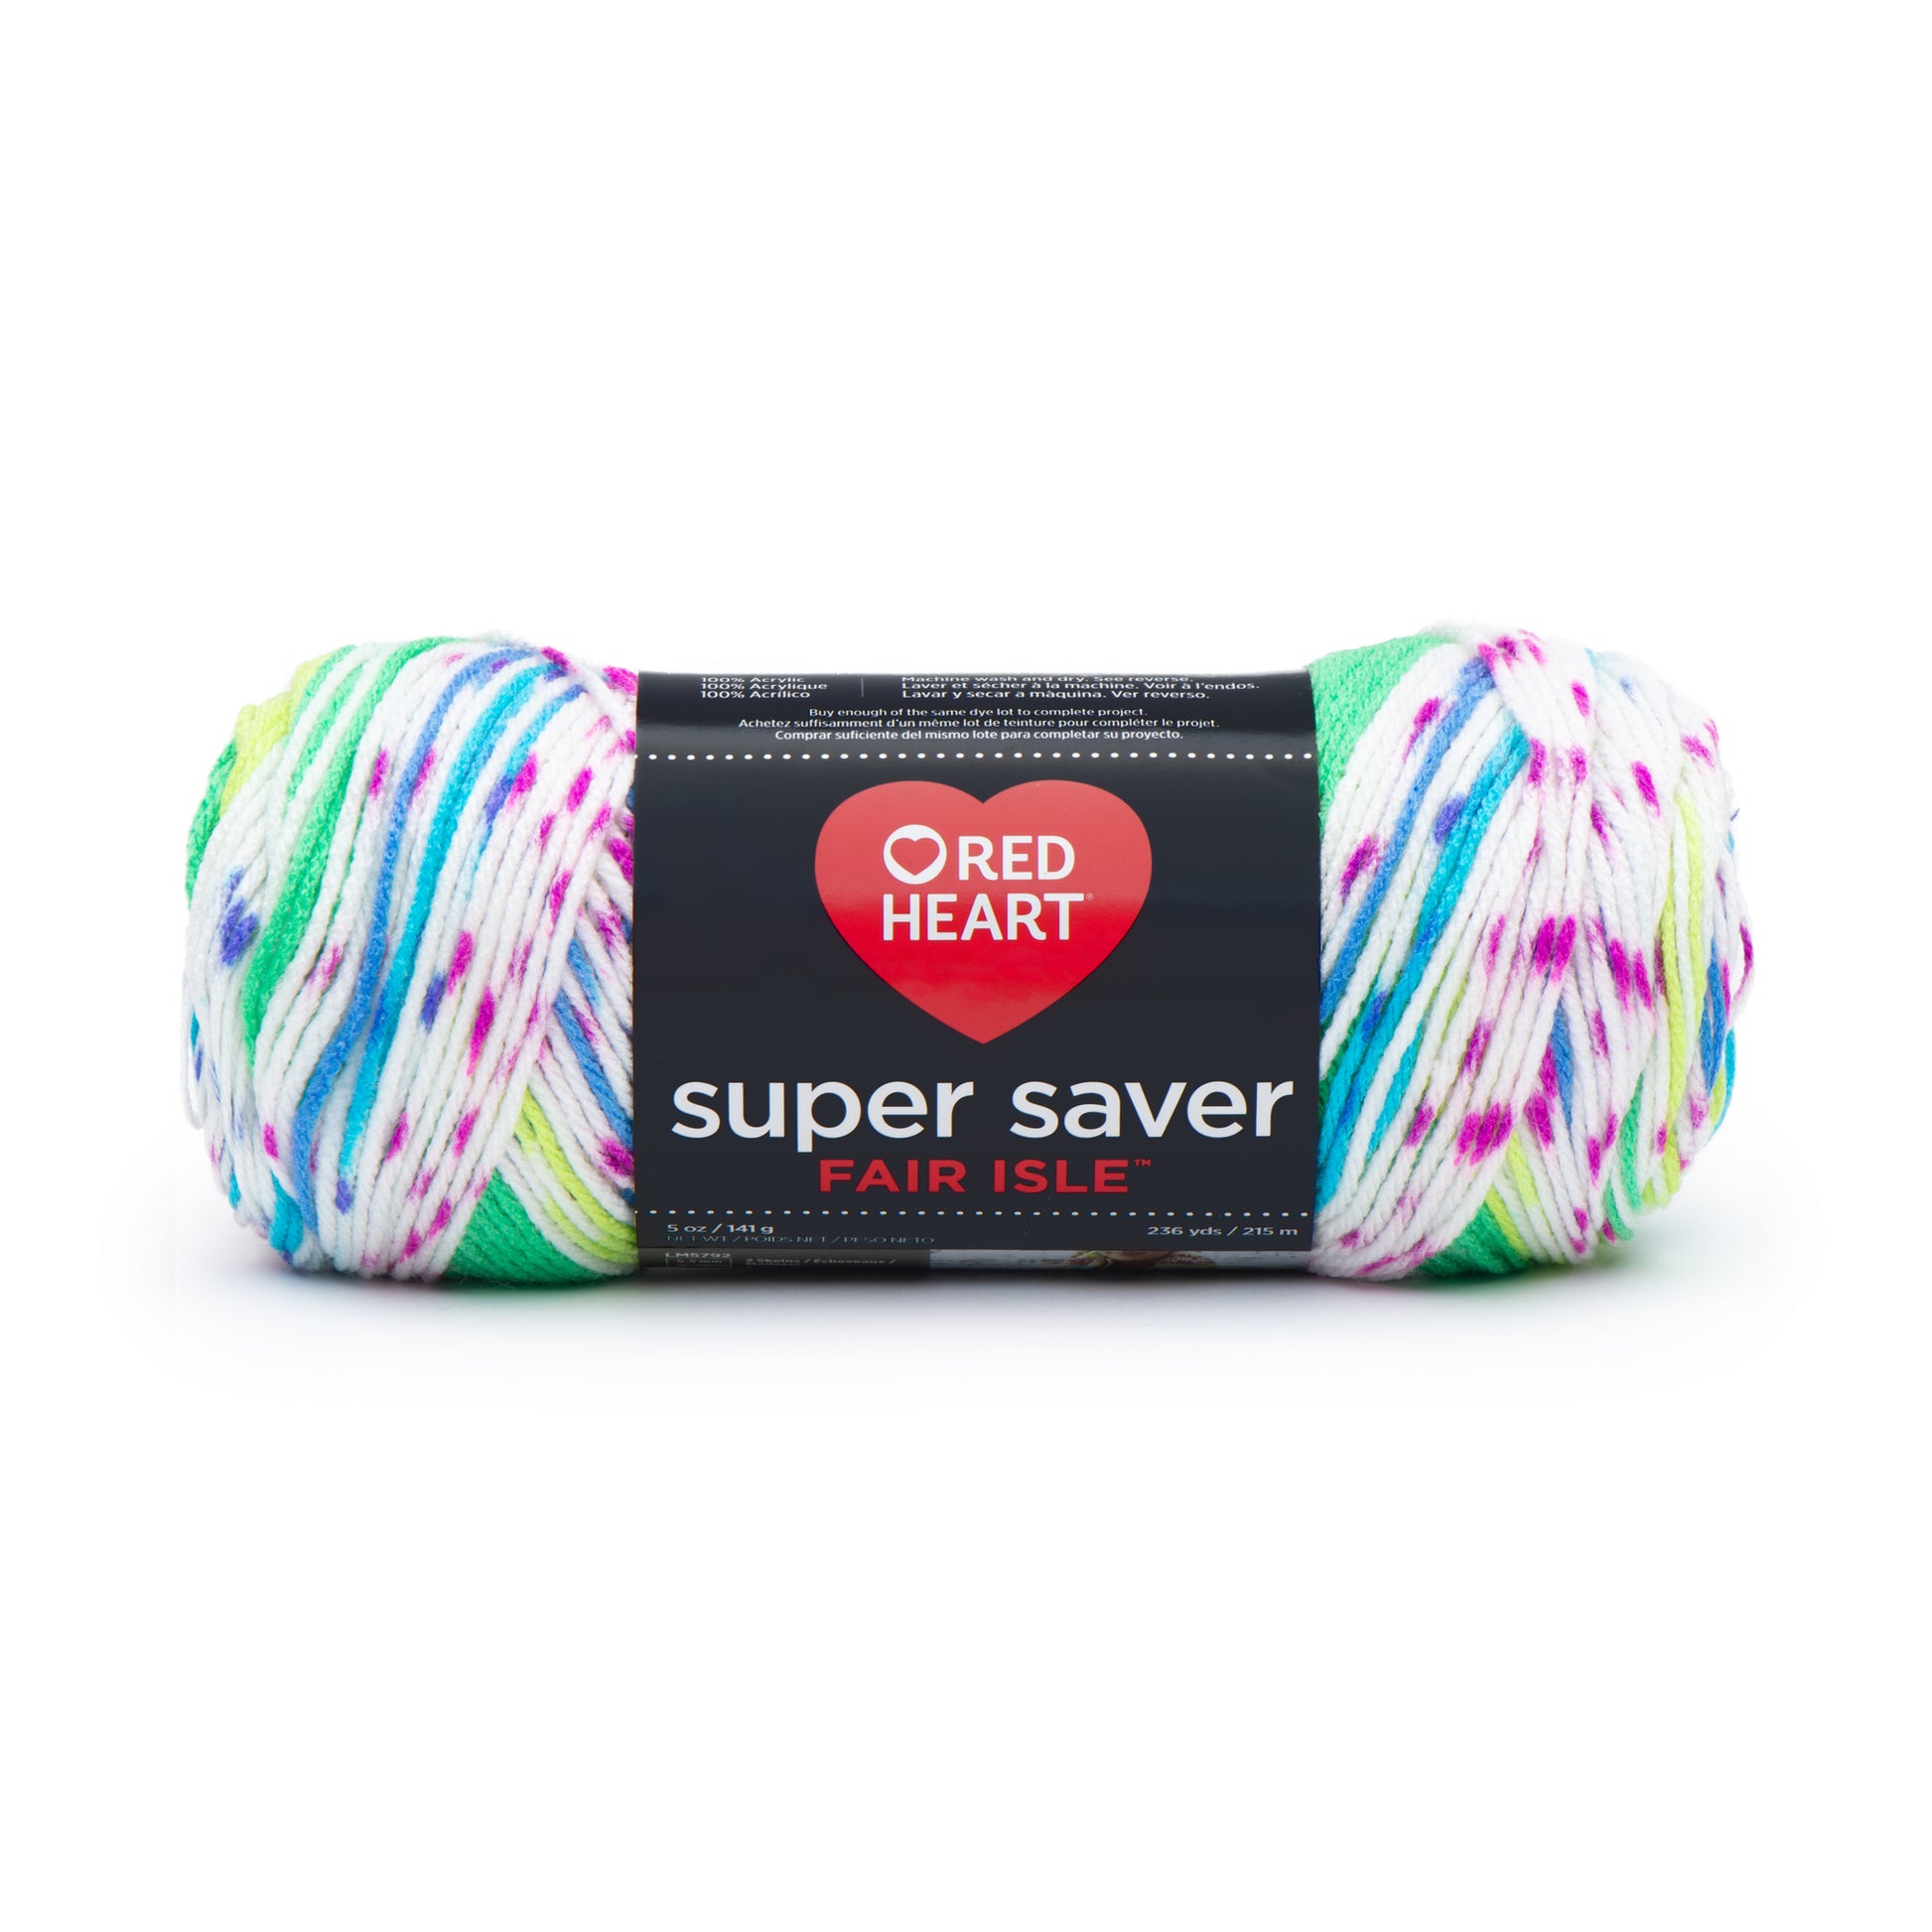 Red Heart Super Saver Fair Isle Yarn - Discontinued shades